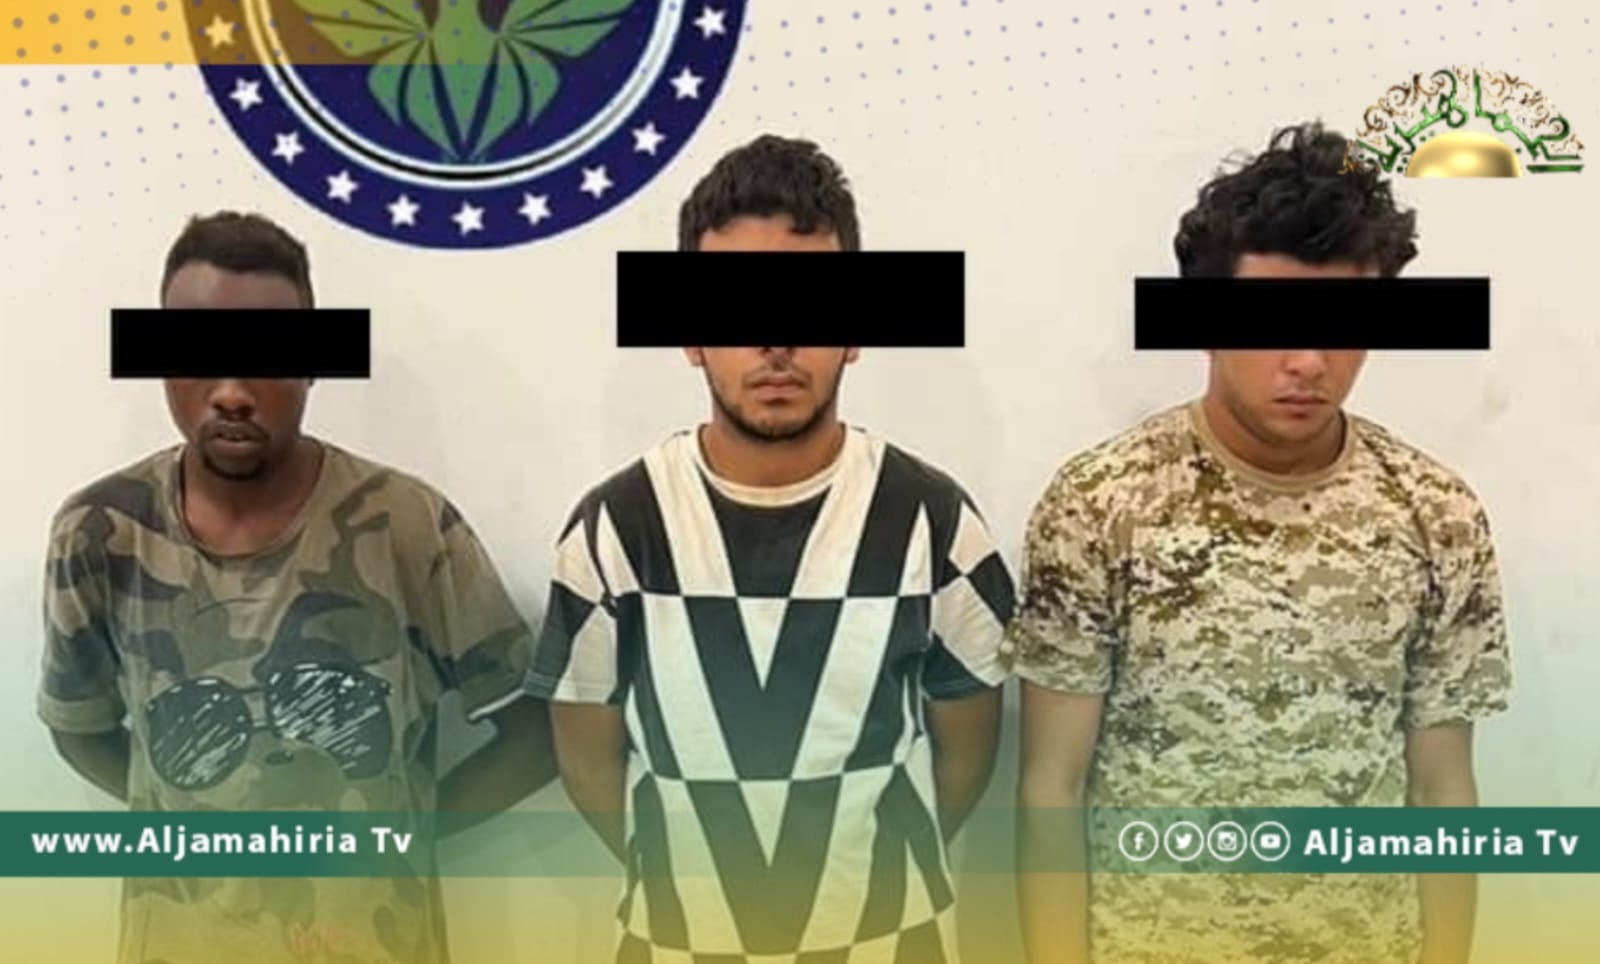 القبض على 3 أشخاص نفذوا عمليات سطو مسلح بطريق المطار طرابلس